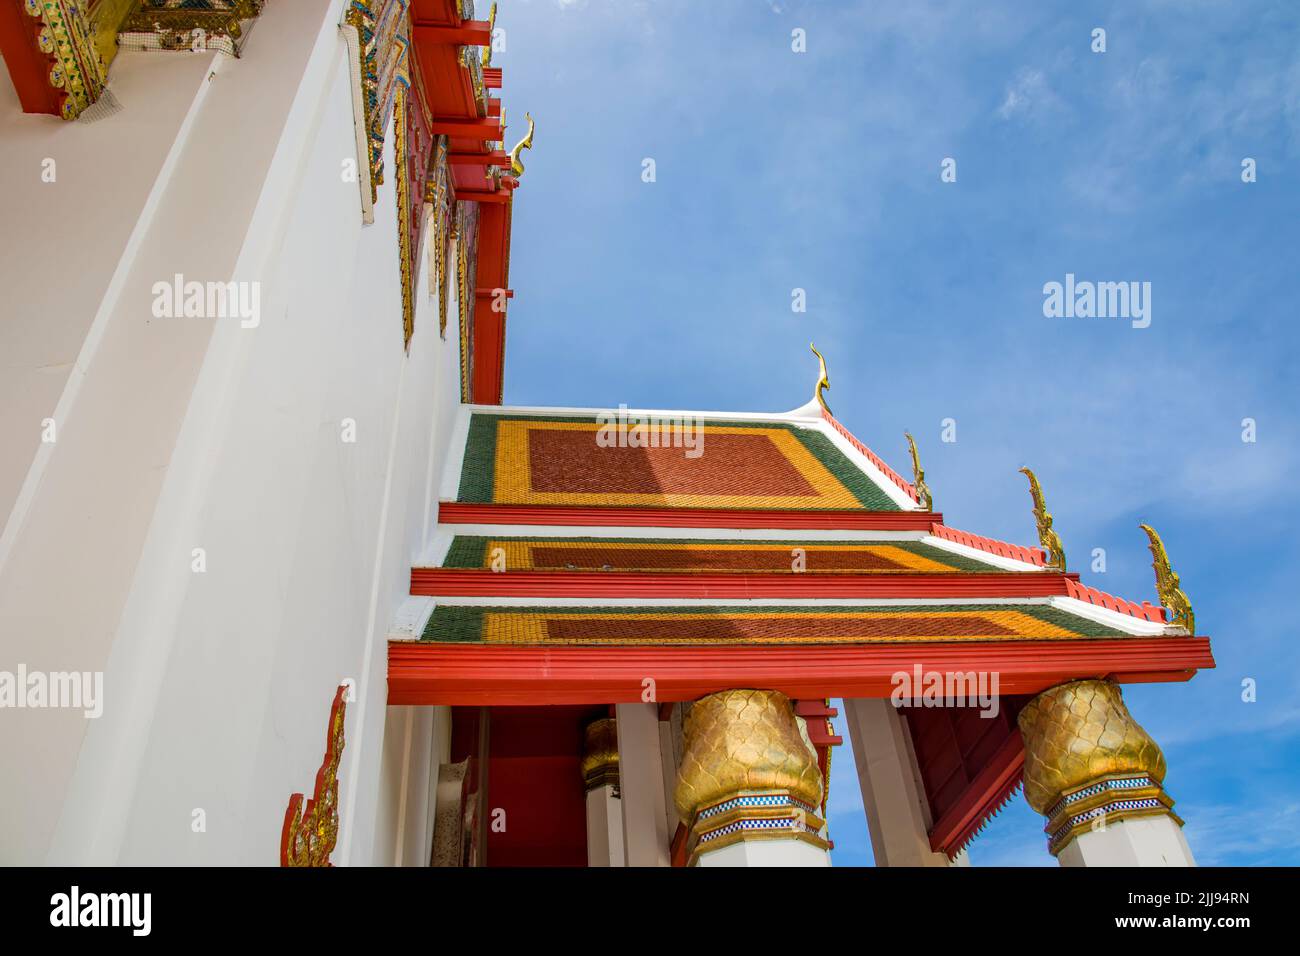 Das Dach von Wihan Phra Mongkhon Bophit, es ist ein 'aktiver' Tempelkomplex in Ayutthaya Thailand. Das Hauptmerkmal ist der große bronzene (vergoldete) Buddha Stockfoto